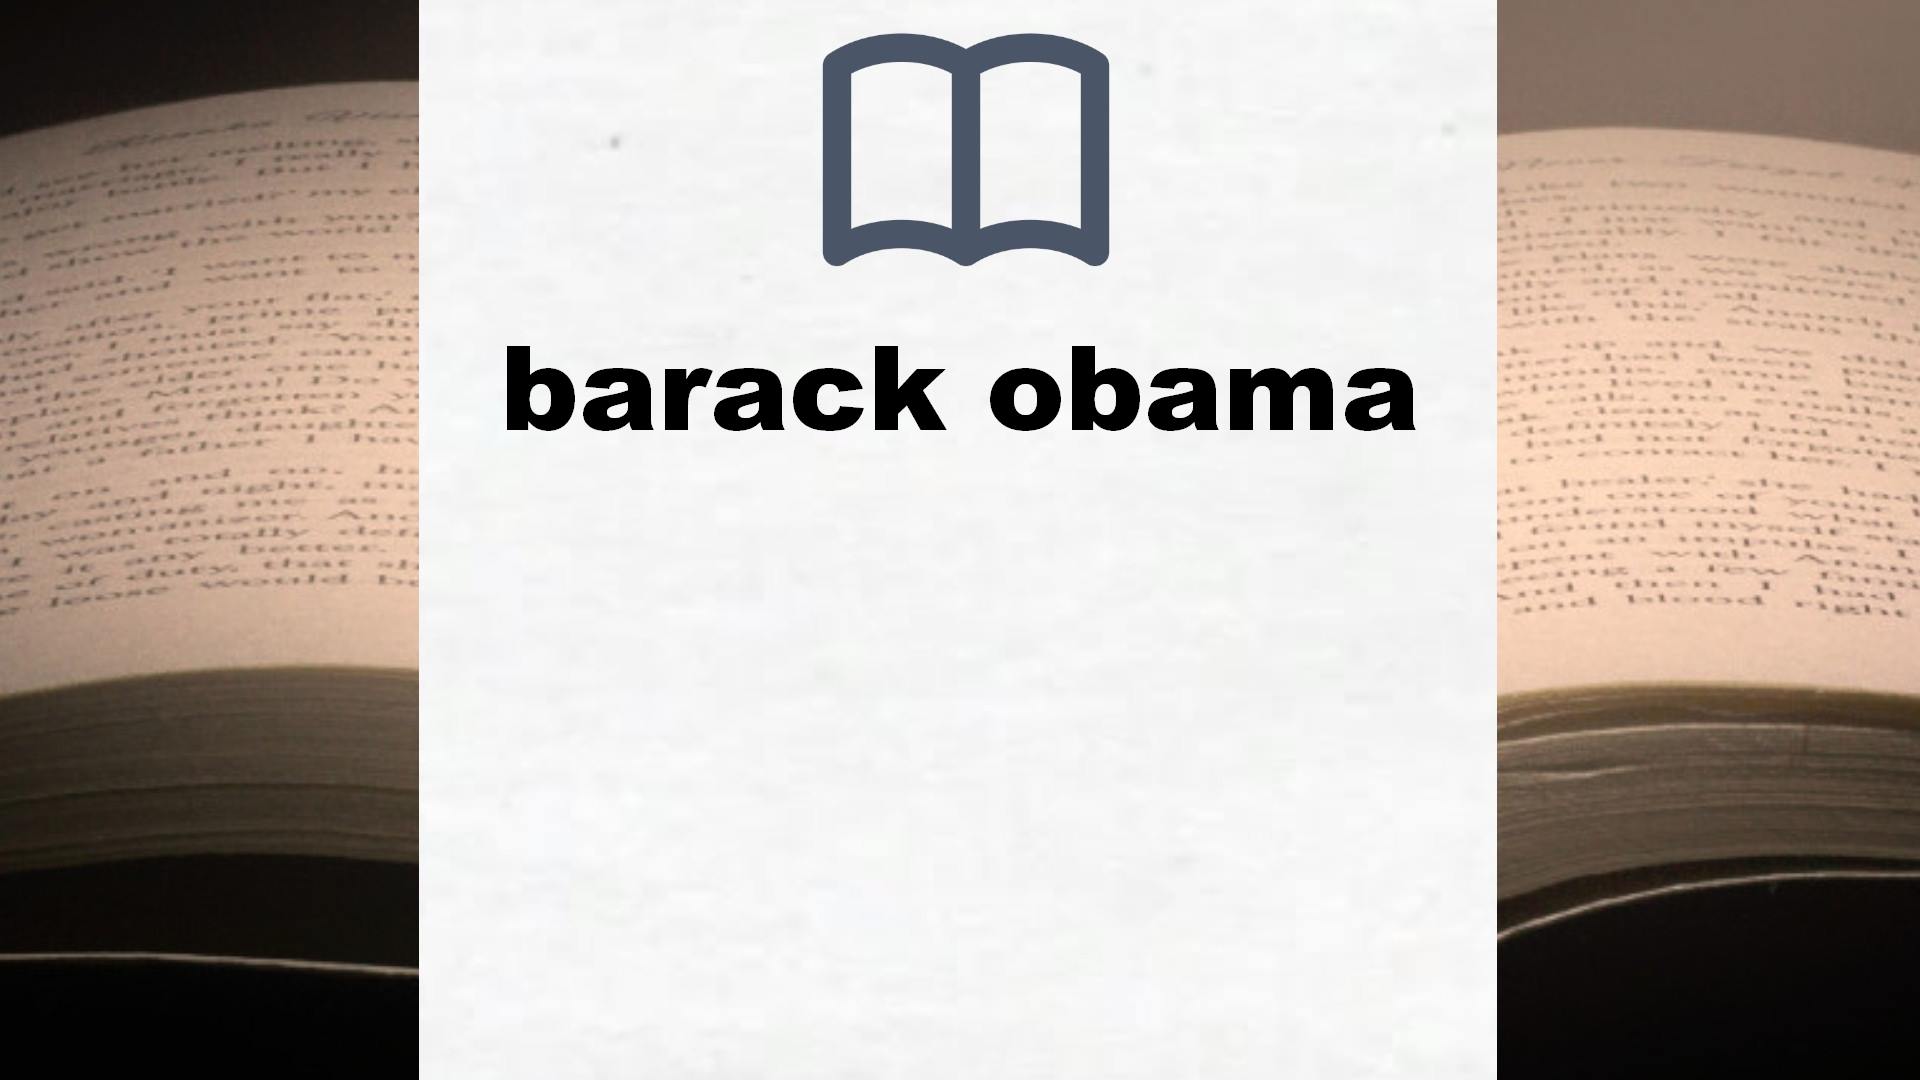 Libros sobre barack obama